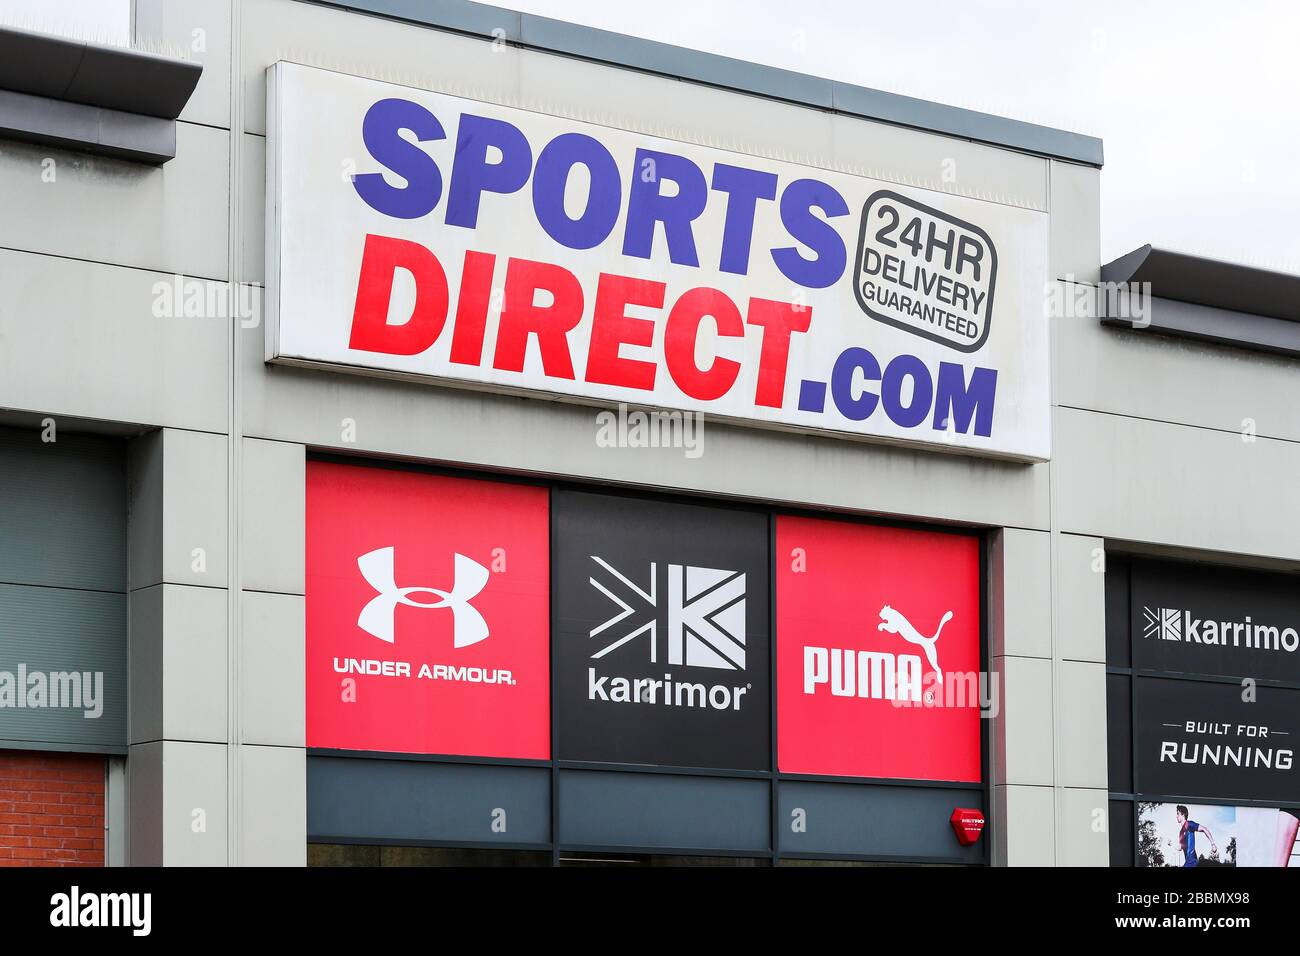 Logo de la boutique Sports Direct avec publicité pour les équipements et vêtements de sport, Ayr, Écosse, Royaume-Uni Banque D'Images